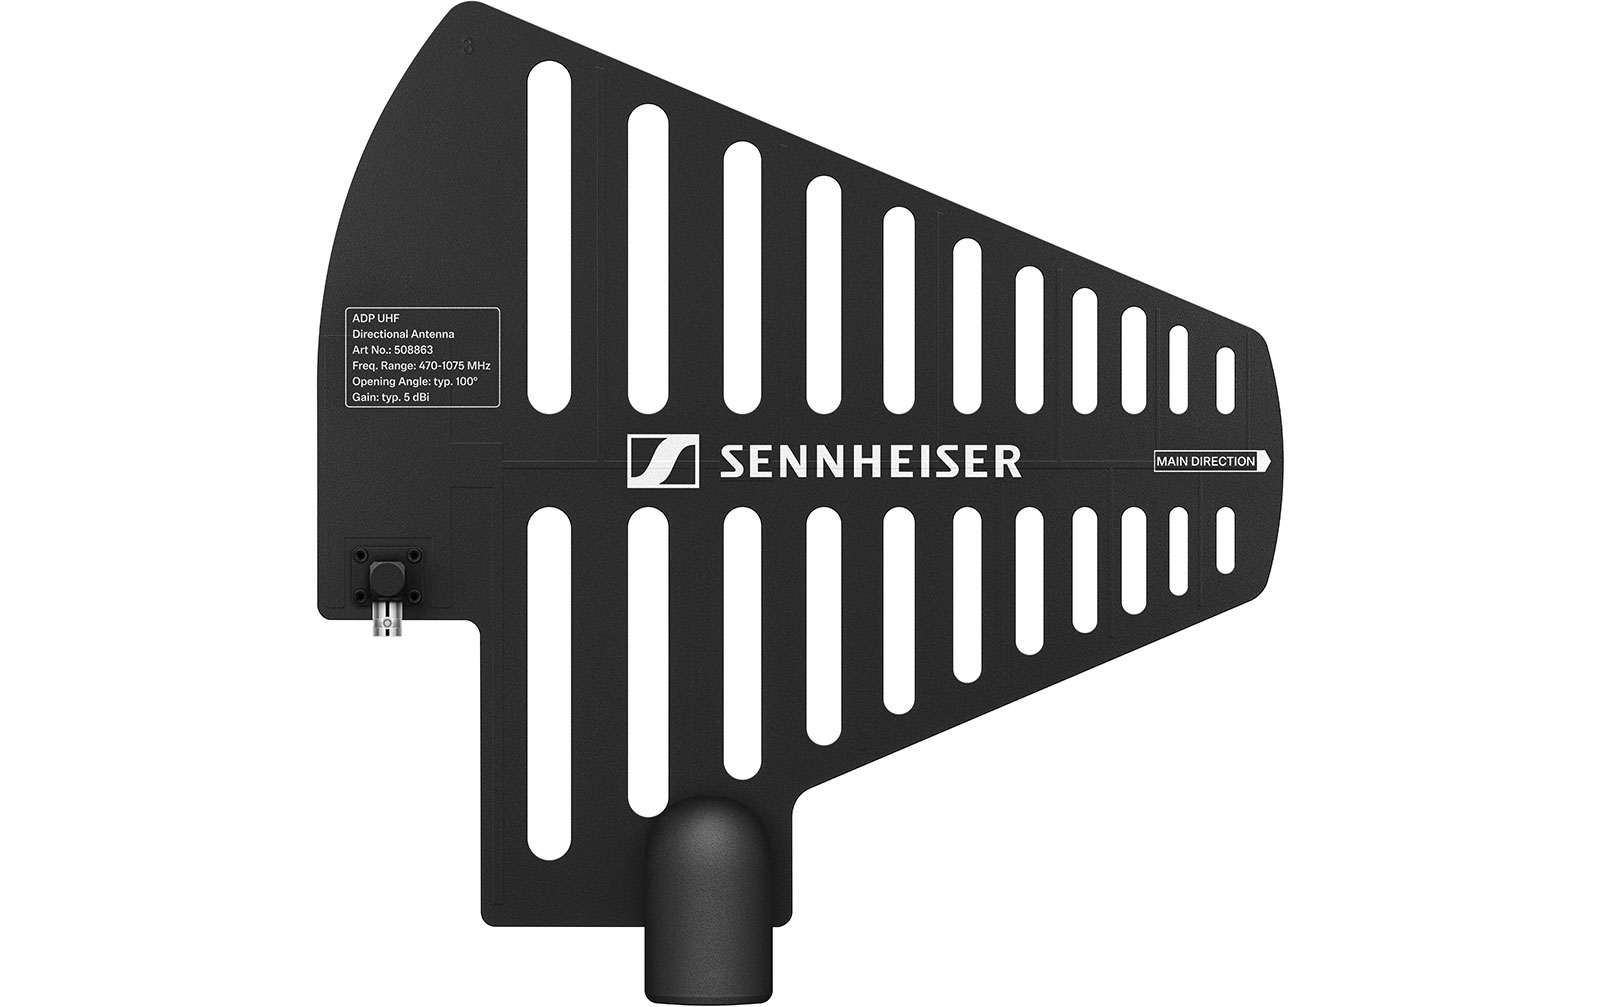 Sennheiser ADP UHF Richtantenne 470 - 1075 MHZ von Sennheiser